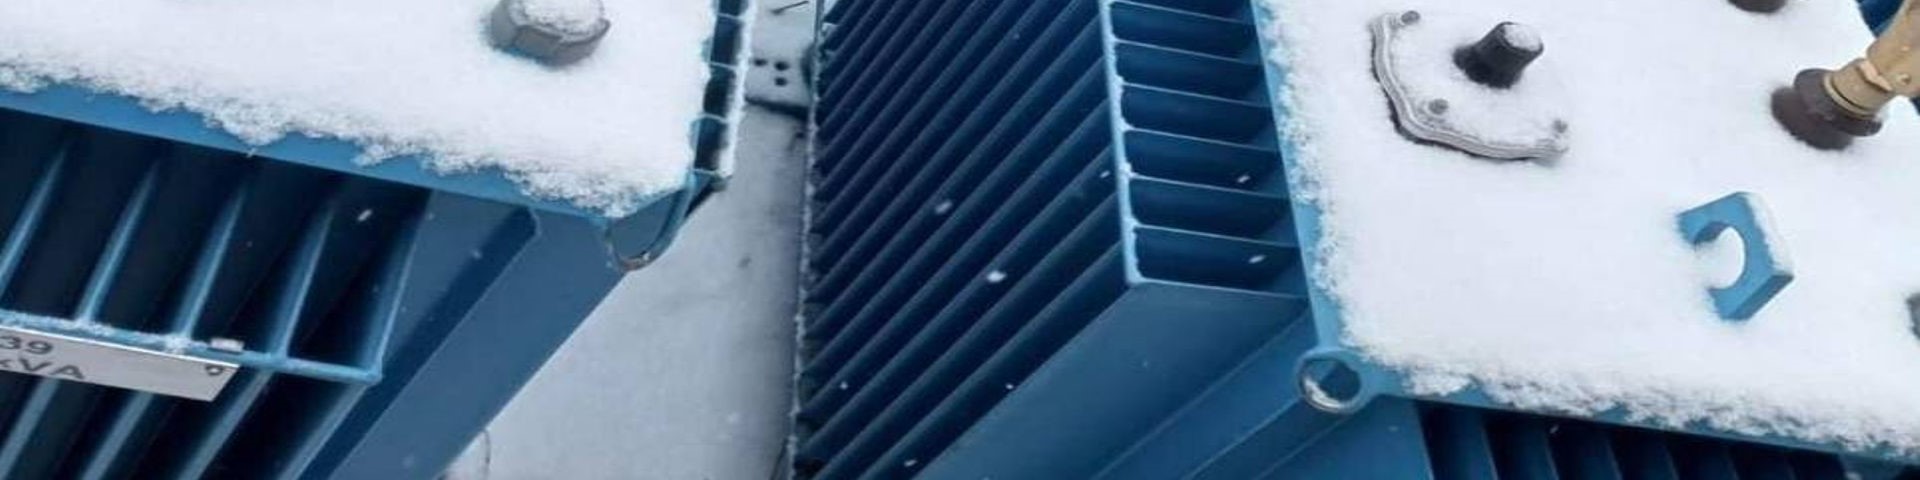 Schneebedeckte Energiespeicher in blauen Container stehen nebeneinander.